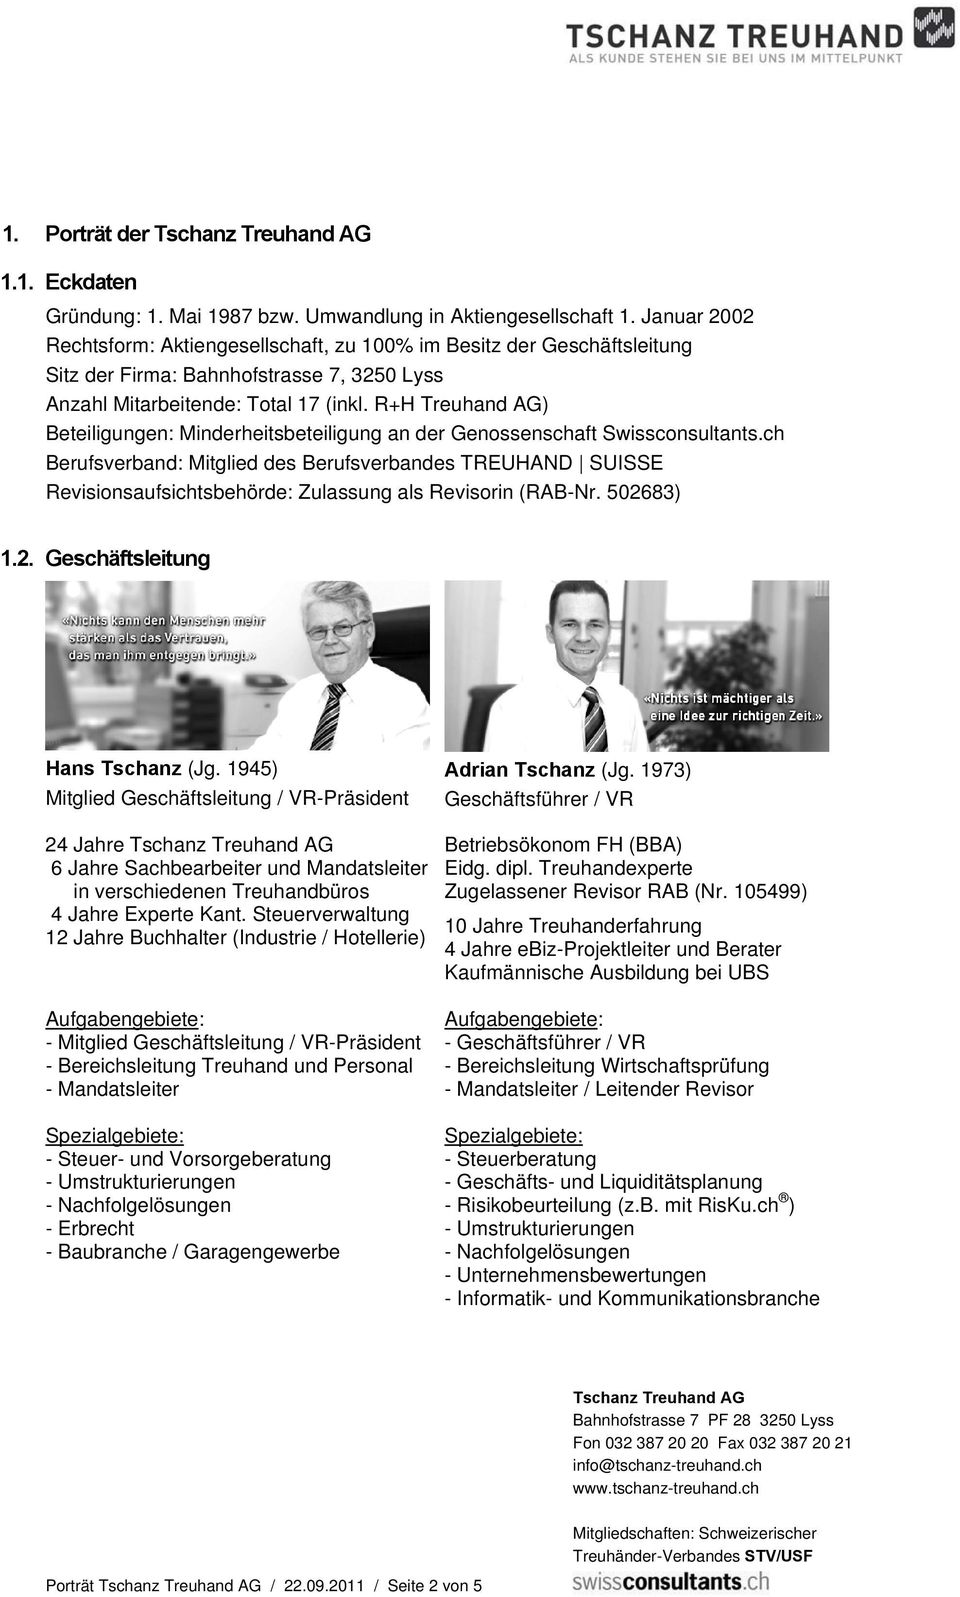 R+H Treuhand AG) Beteiligungen: Minderheitsbeteiligung an der Genossenschaft Swissconsultants.